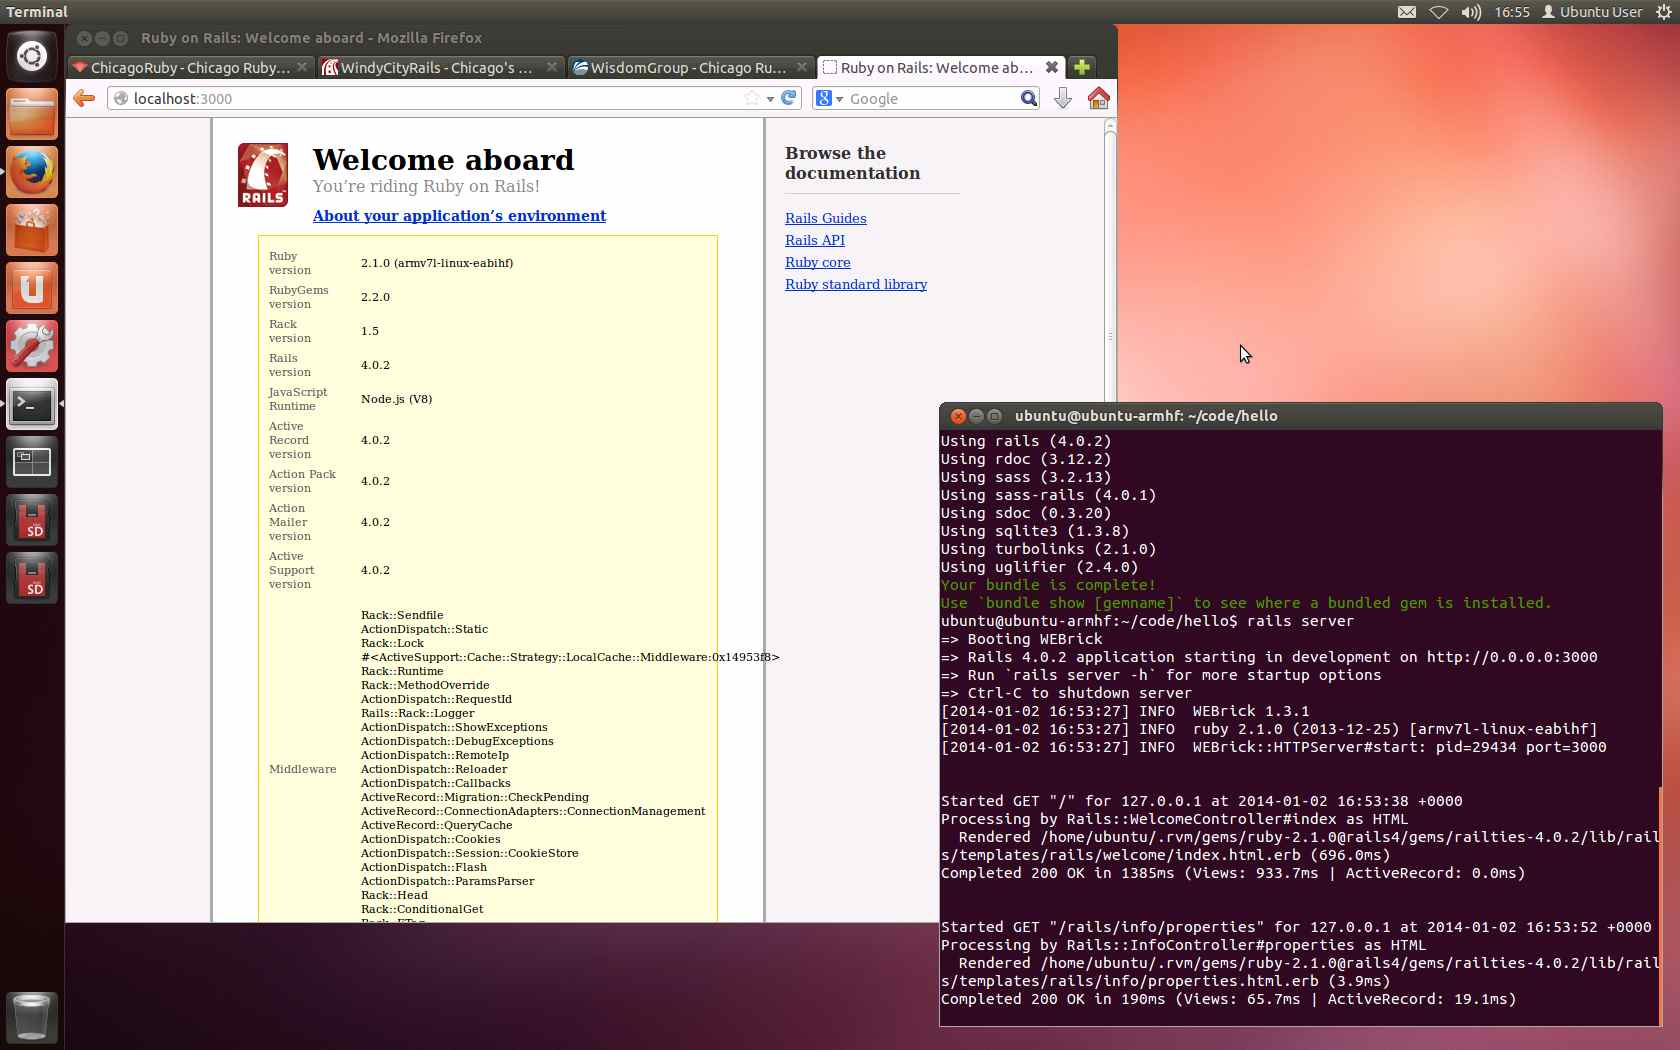 BeagleBone Black running Ubuntu, Ruby, & Rails.